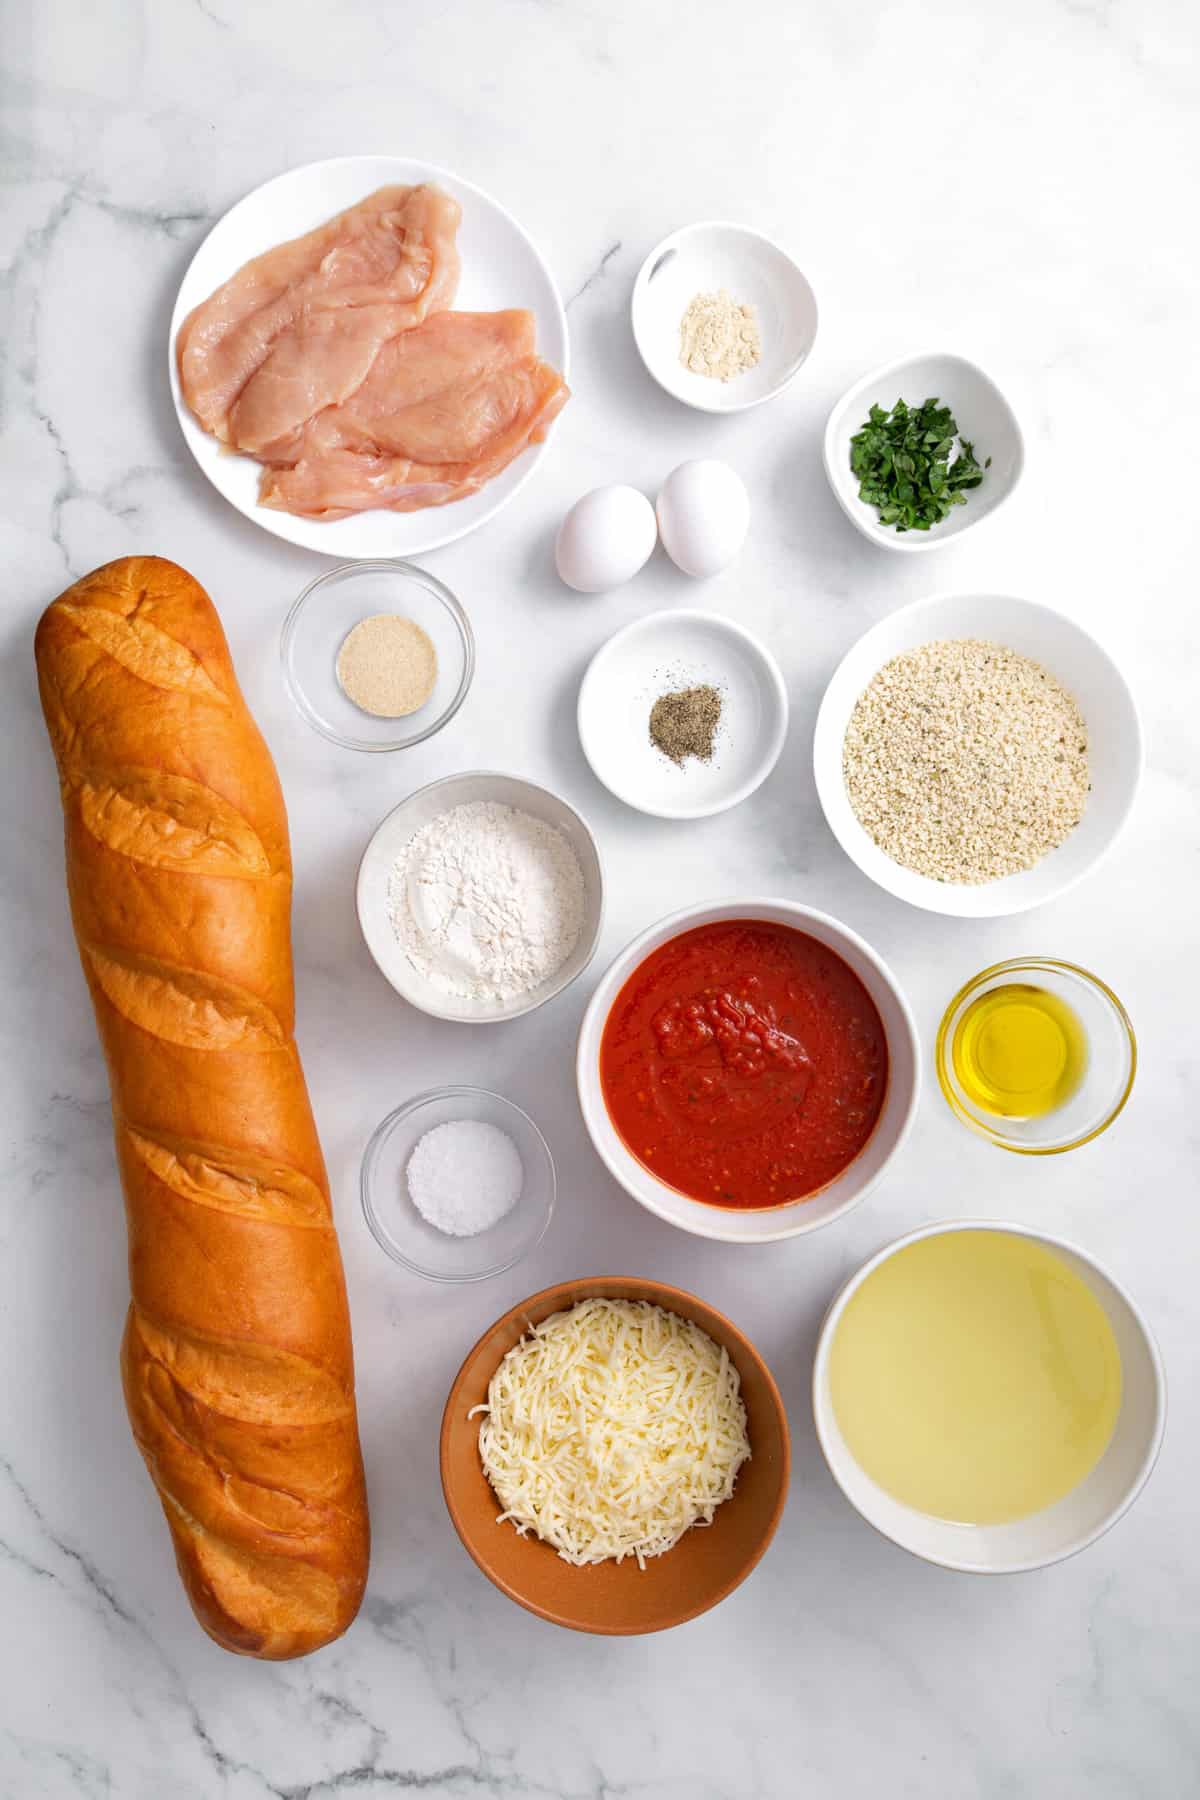 ingredients to make chicken parmesan sandwiches